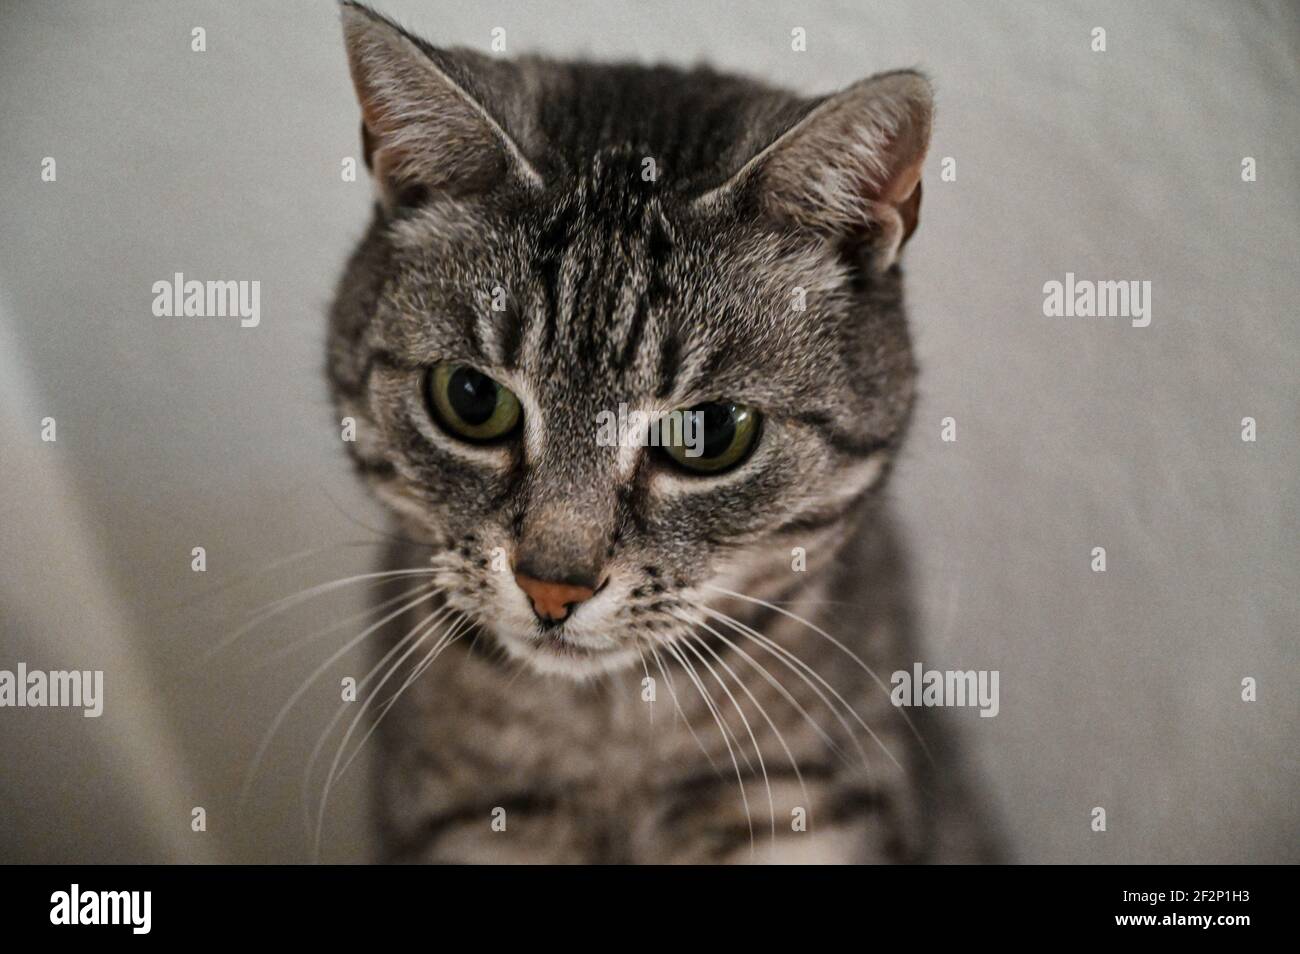 Portrait d'un chat à courte vue européen avec des rayures noires et des yeux verts Banque D'Images